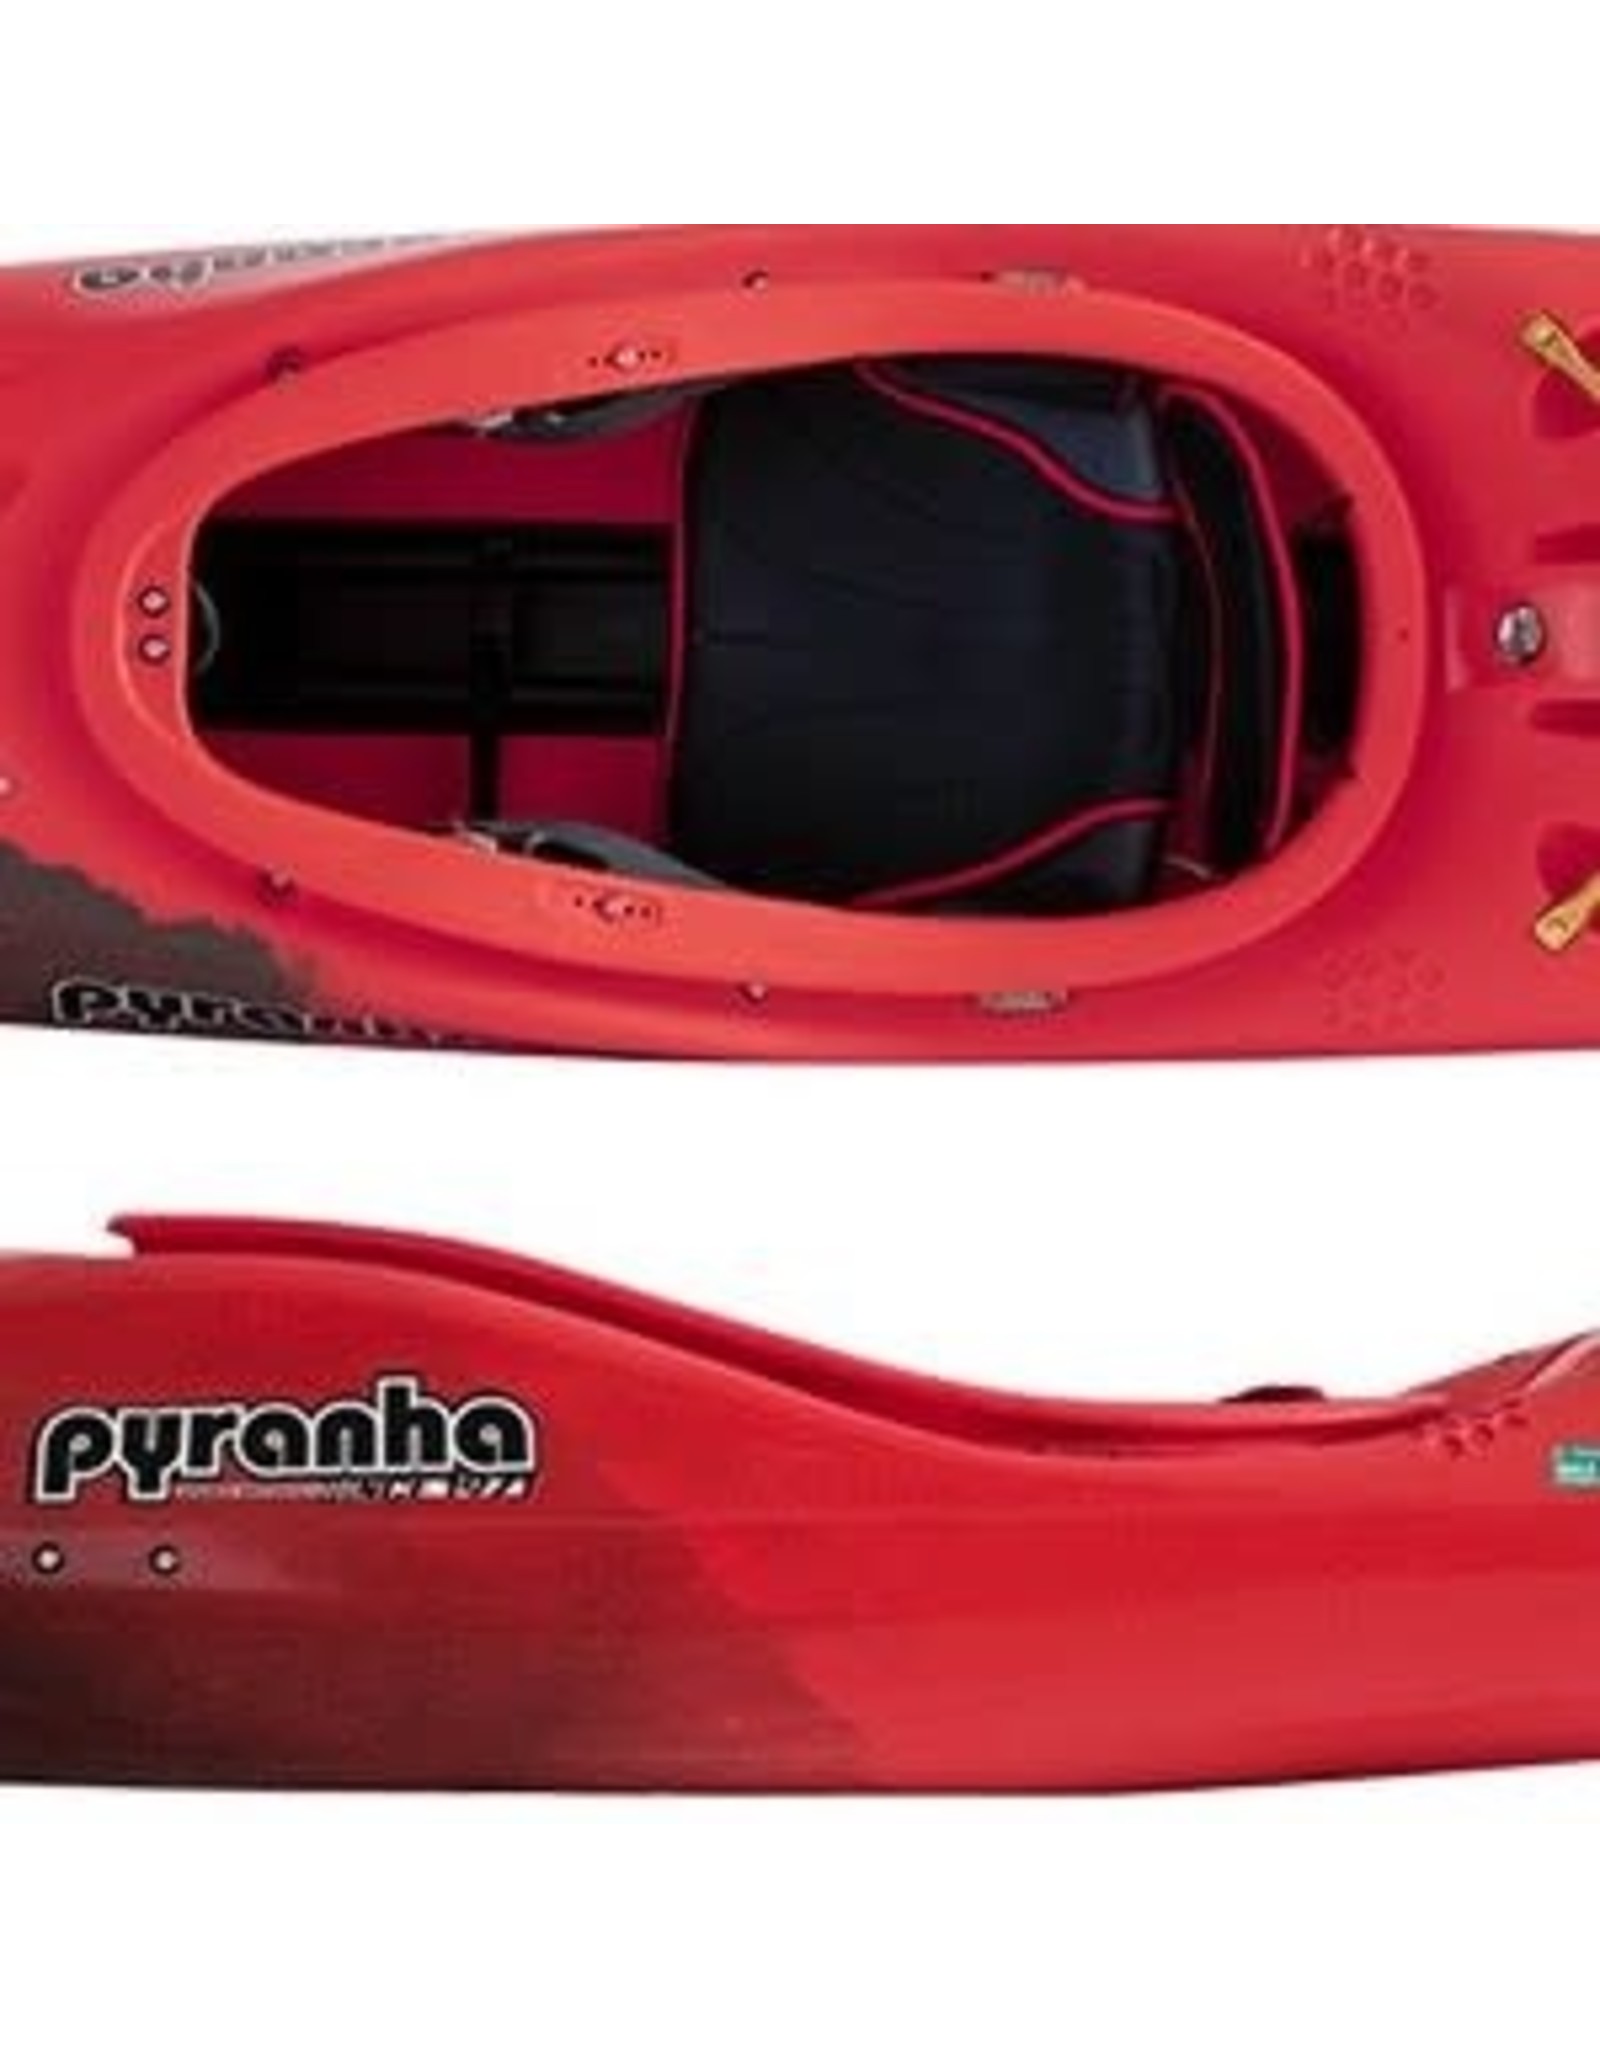 Pyranha Pyranha kayak Jed Stout (2022)